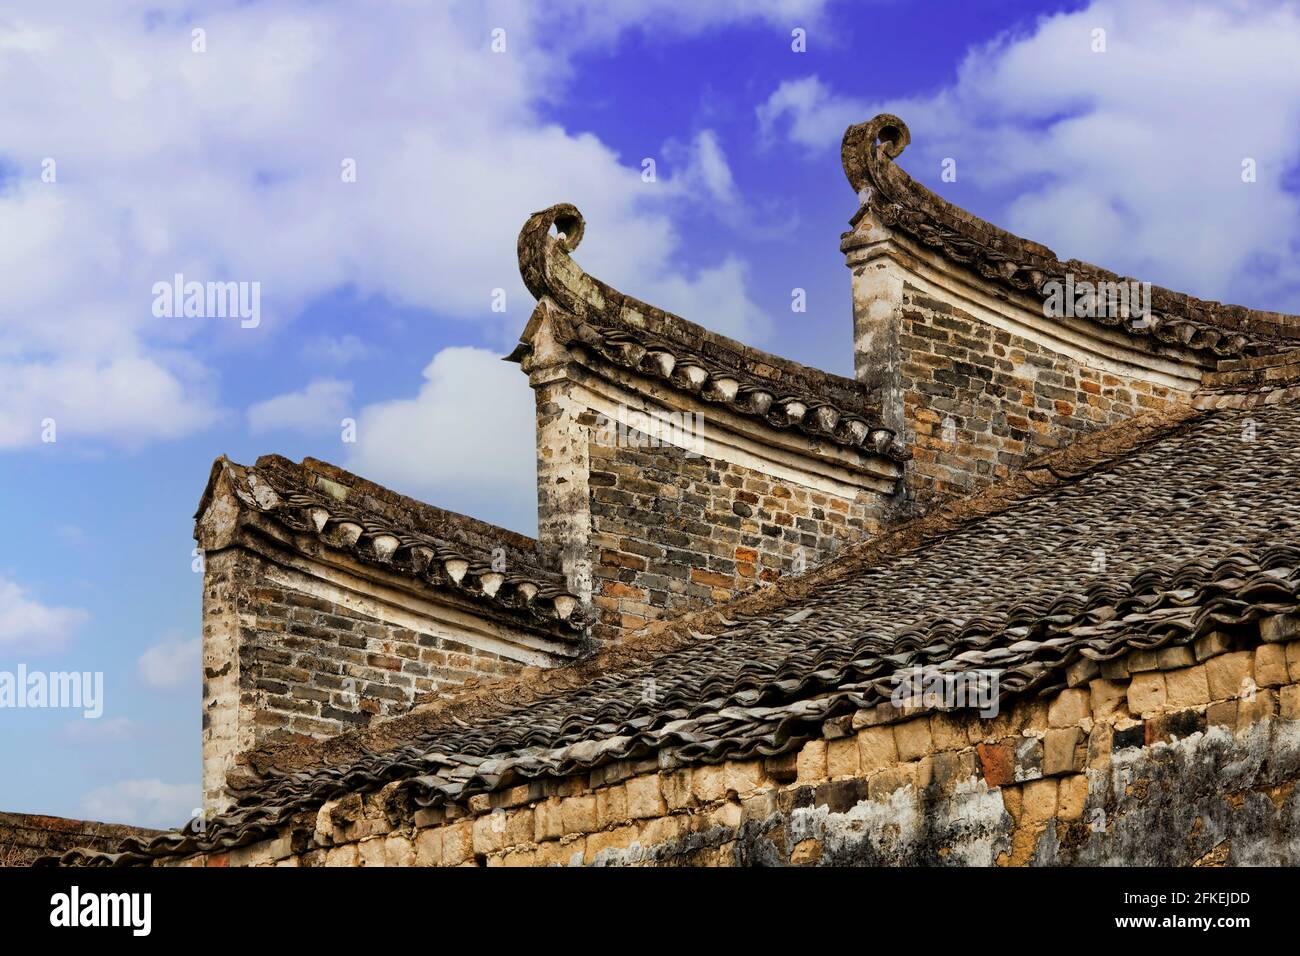 La belle architecture de Jiangtou ancien Village dans la région autonome Zhuang du Guangxi, Chine Banque D'Images